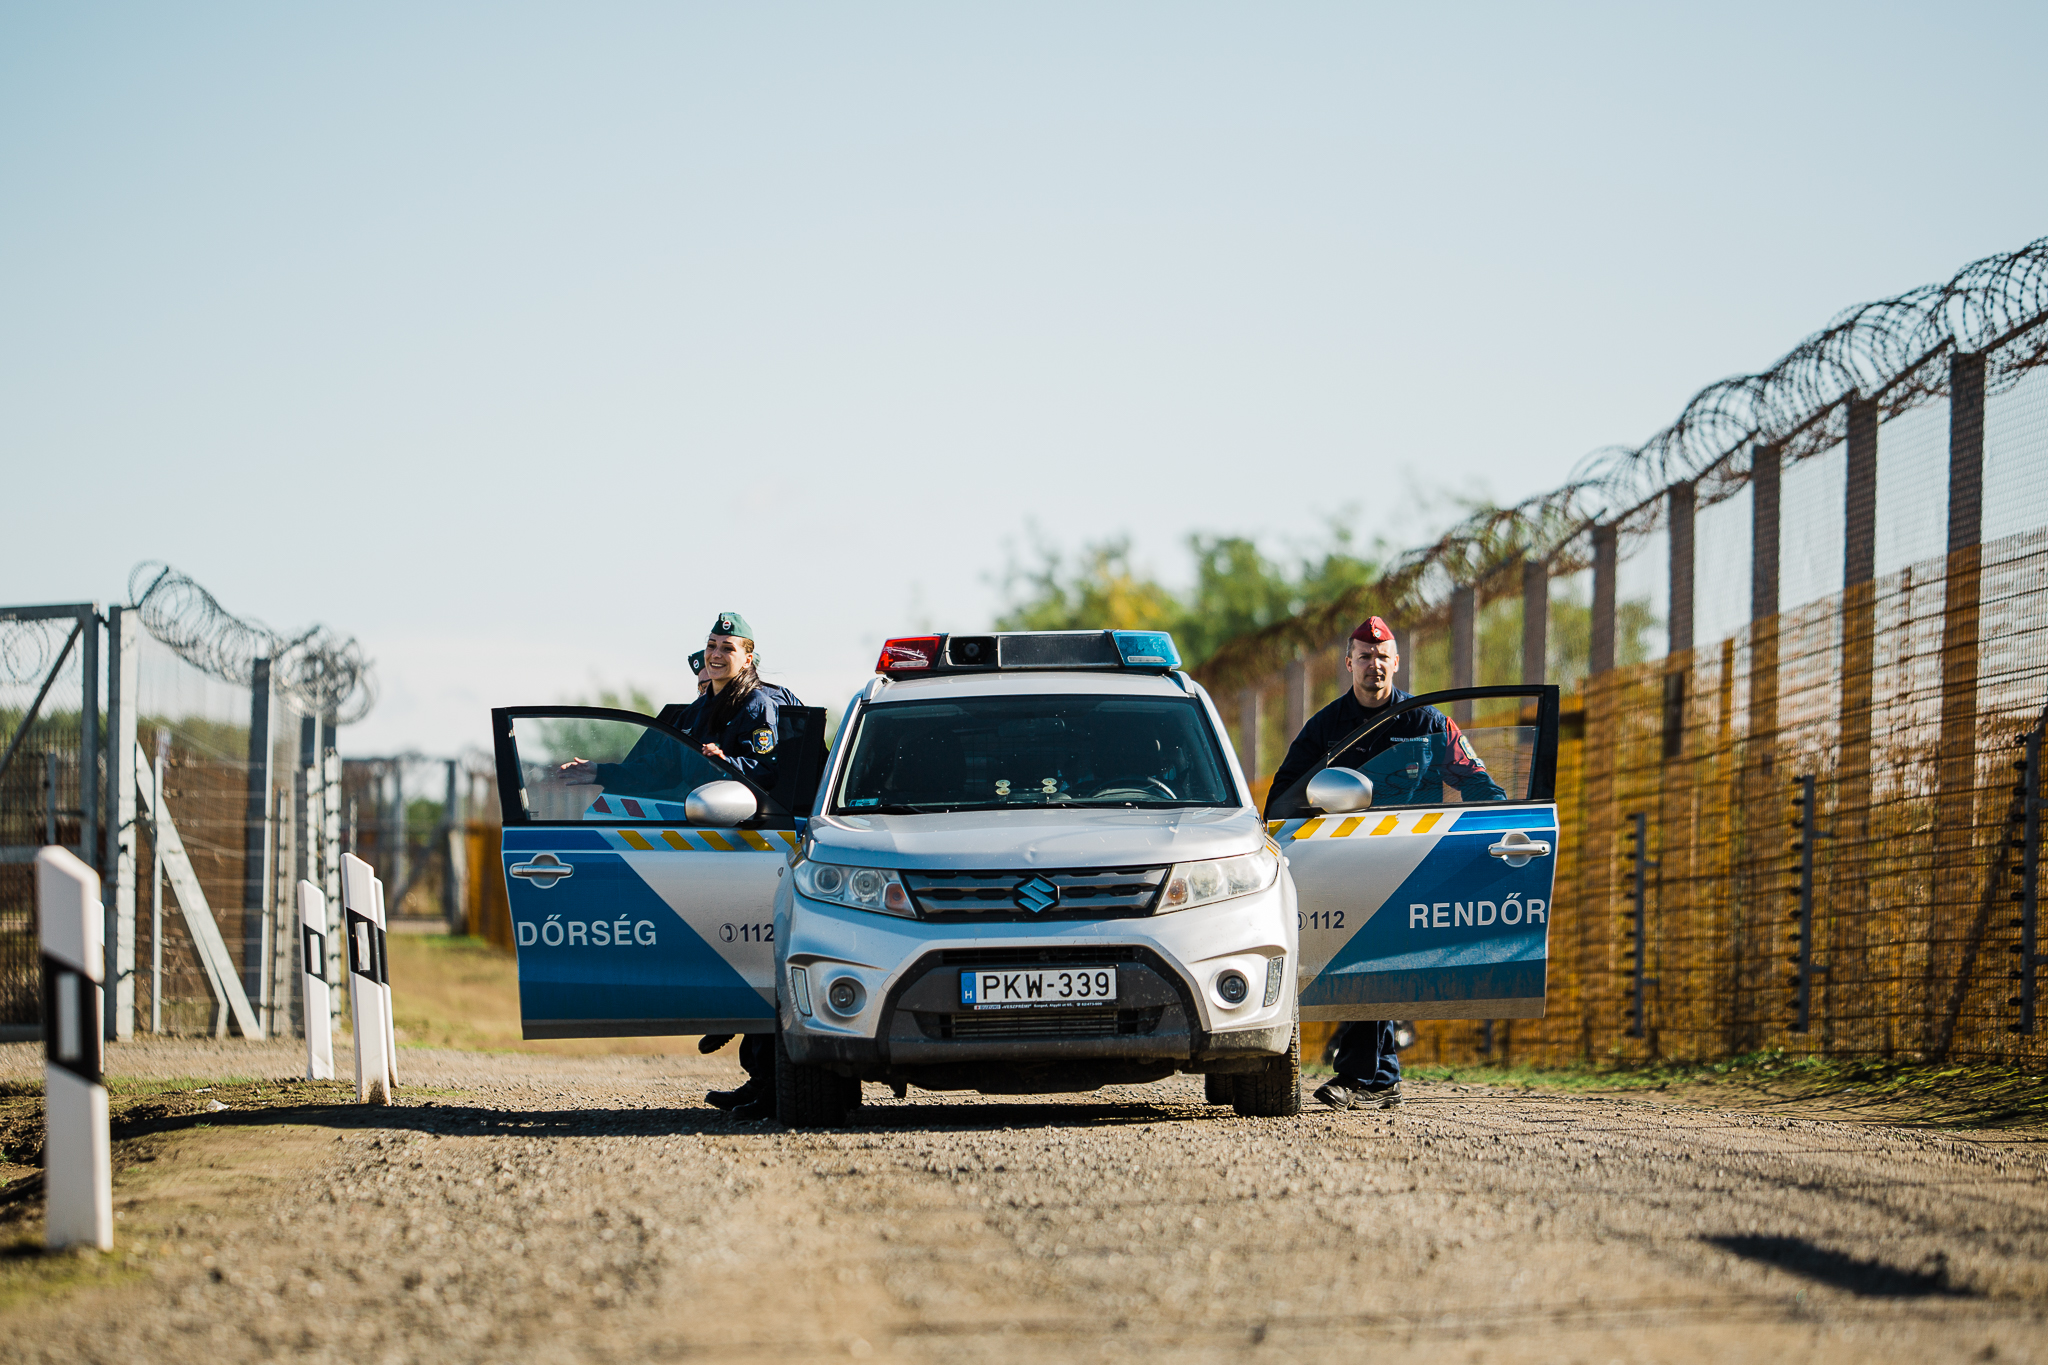 Neuer EU-Migrationspakt würde Ungarns Grenzkontrolle sinnlos machen